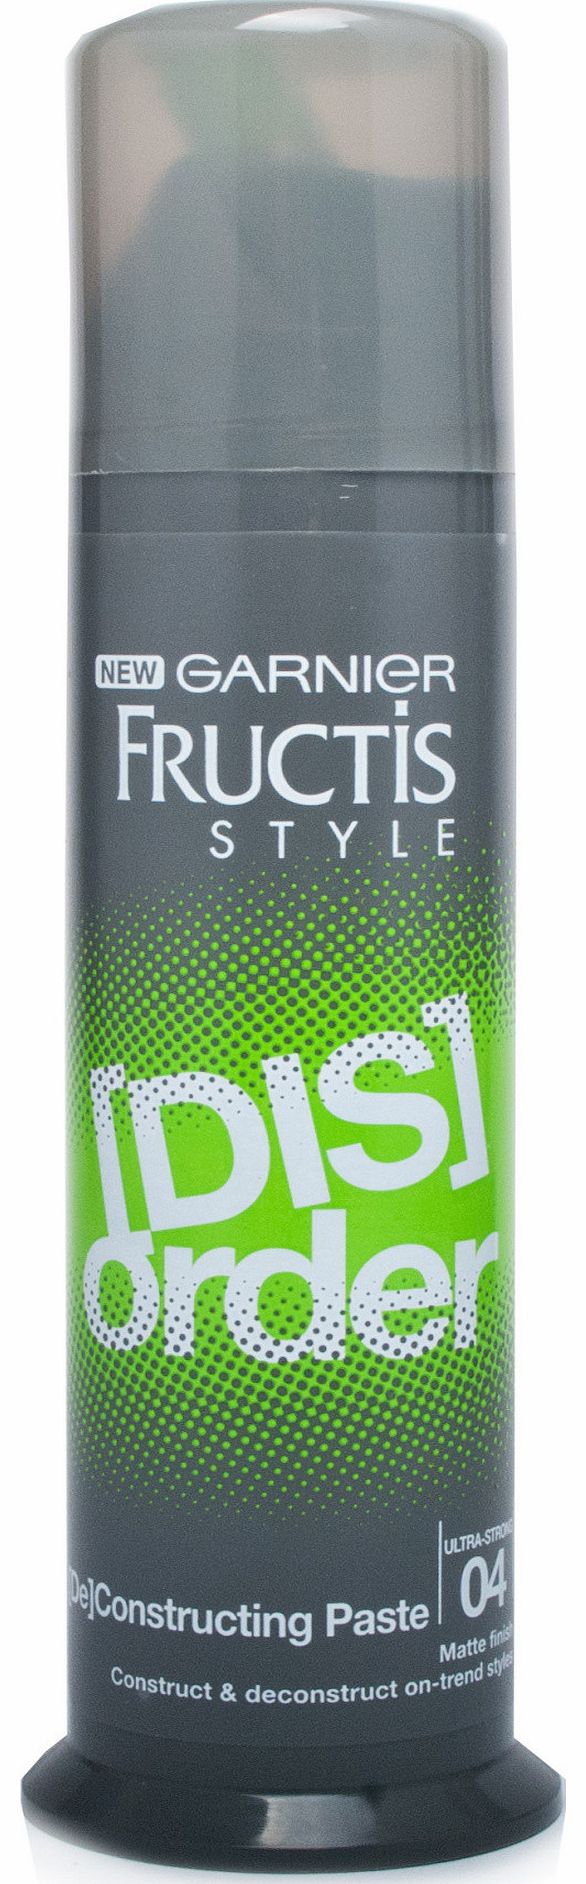 Fructis Garnier Fructis Style Disorder Paste